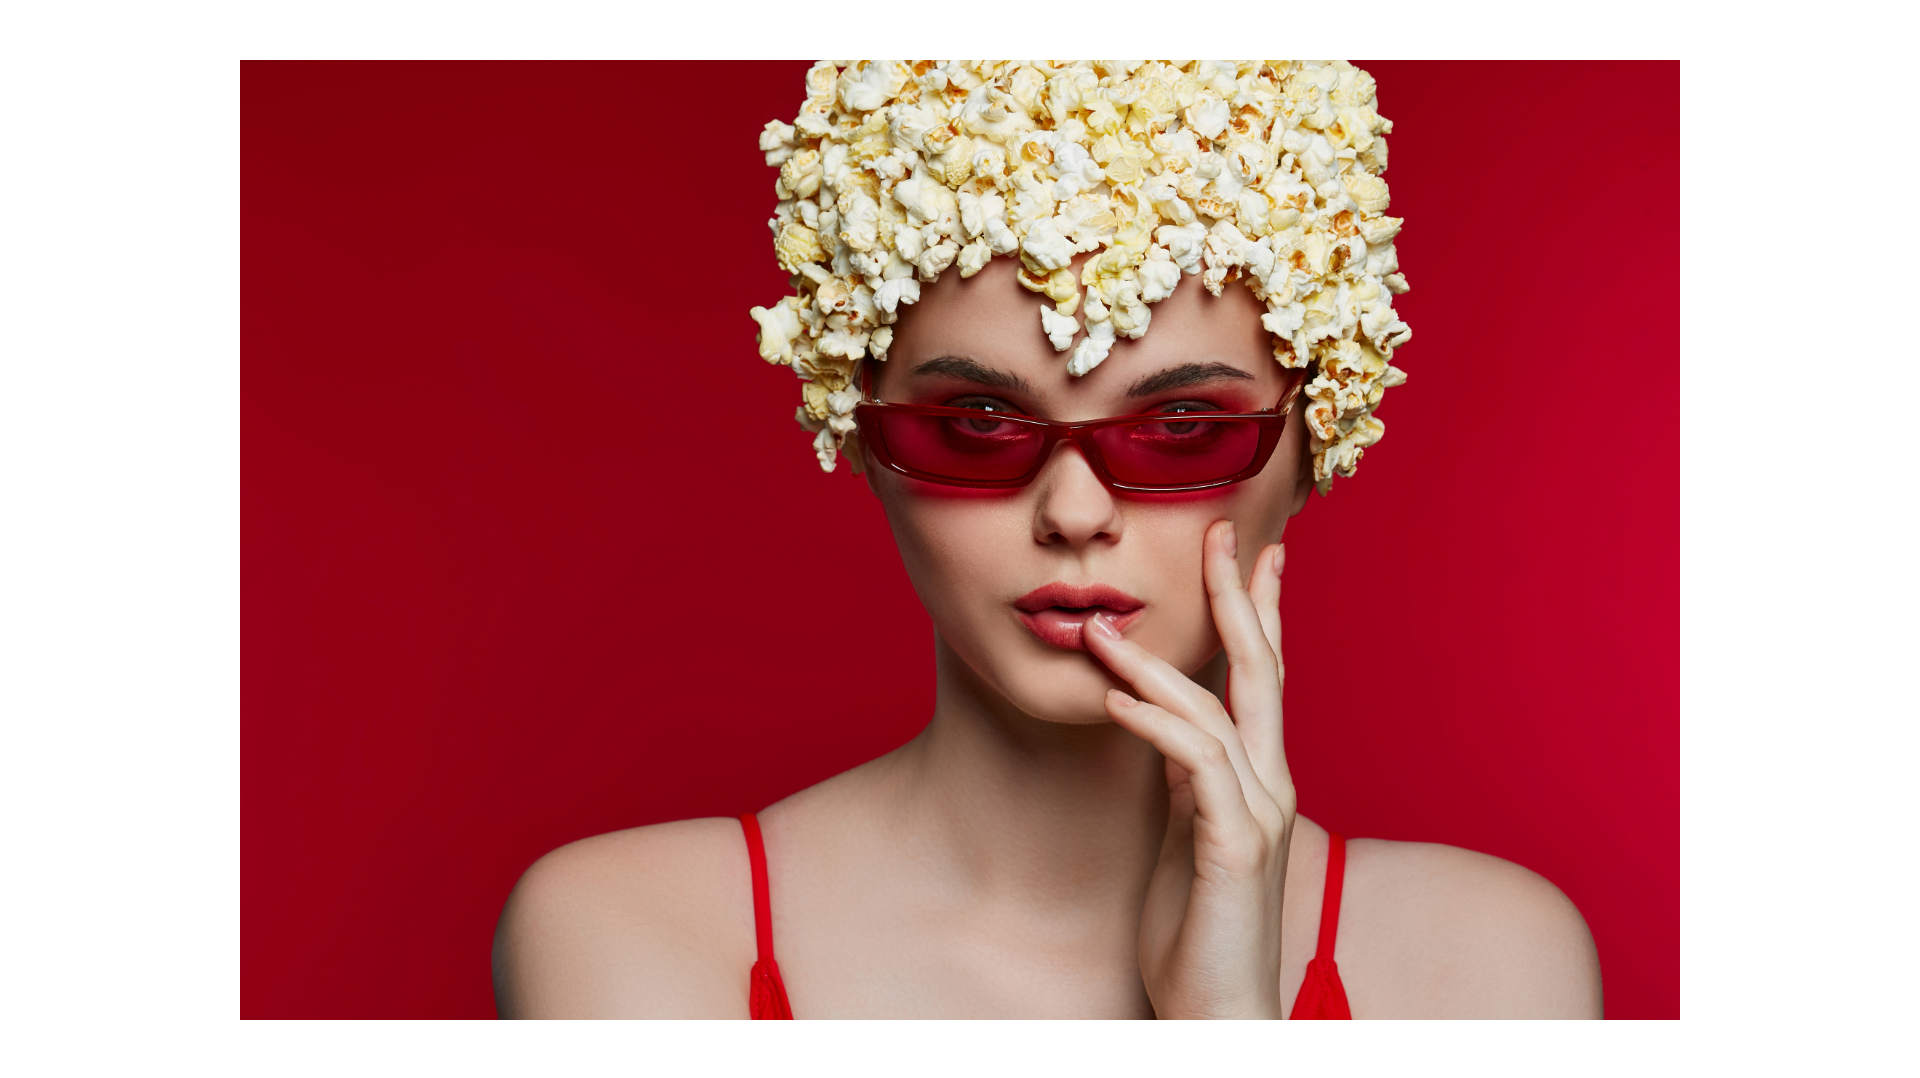 Popcorn, food or fashion?